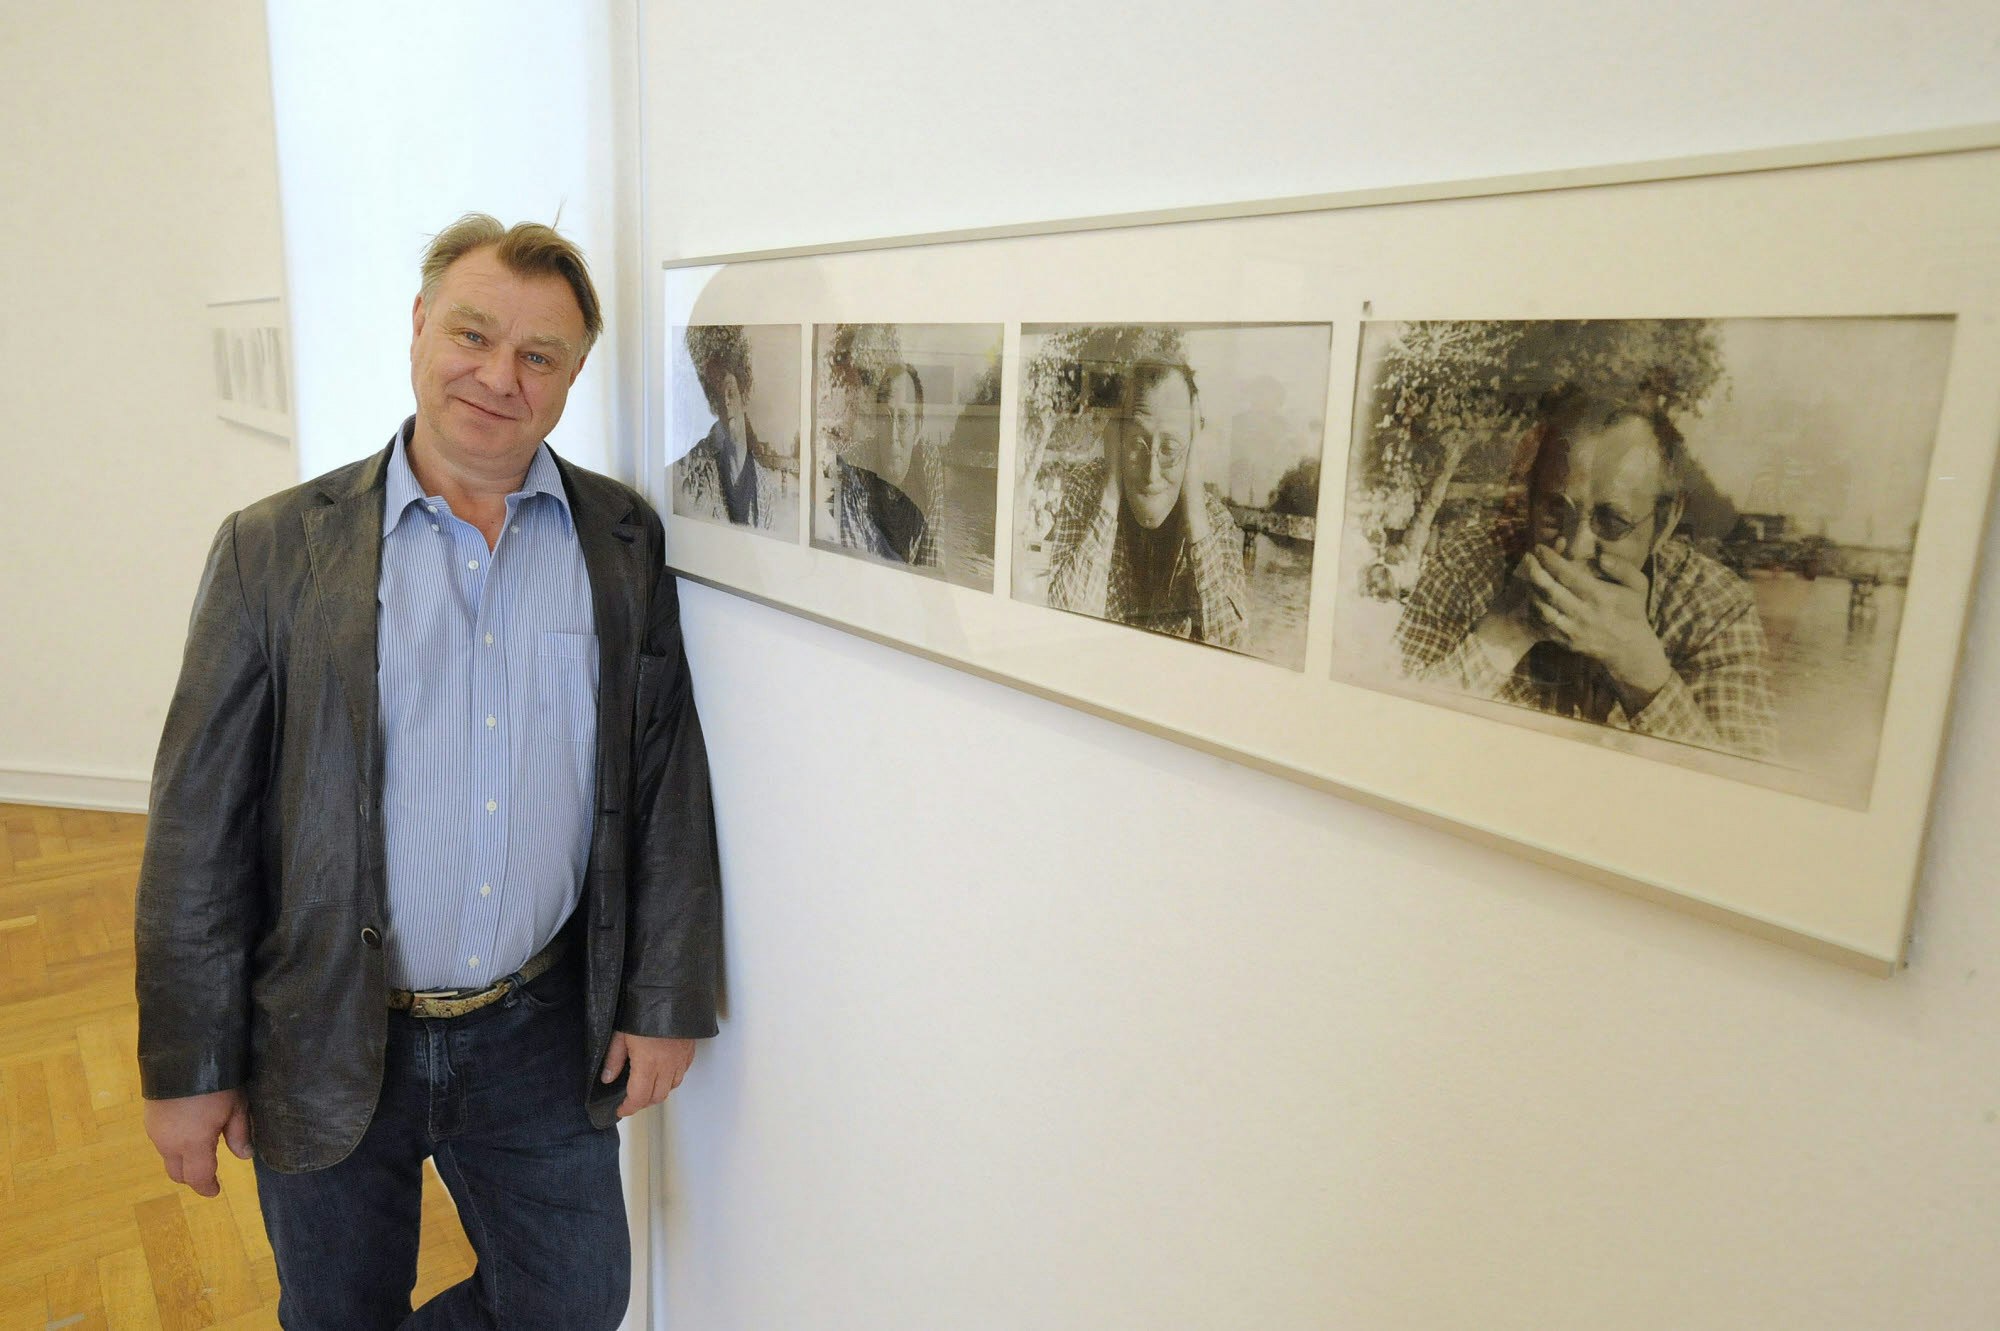 Im Angesicht des Vaters: Sohn und Erbe Georg Polke ermöglichte die Ausstellung der väterlichen Fotografien im Museum Morsbroich.